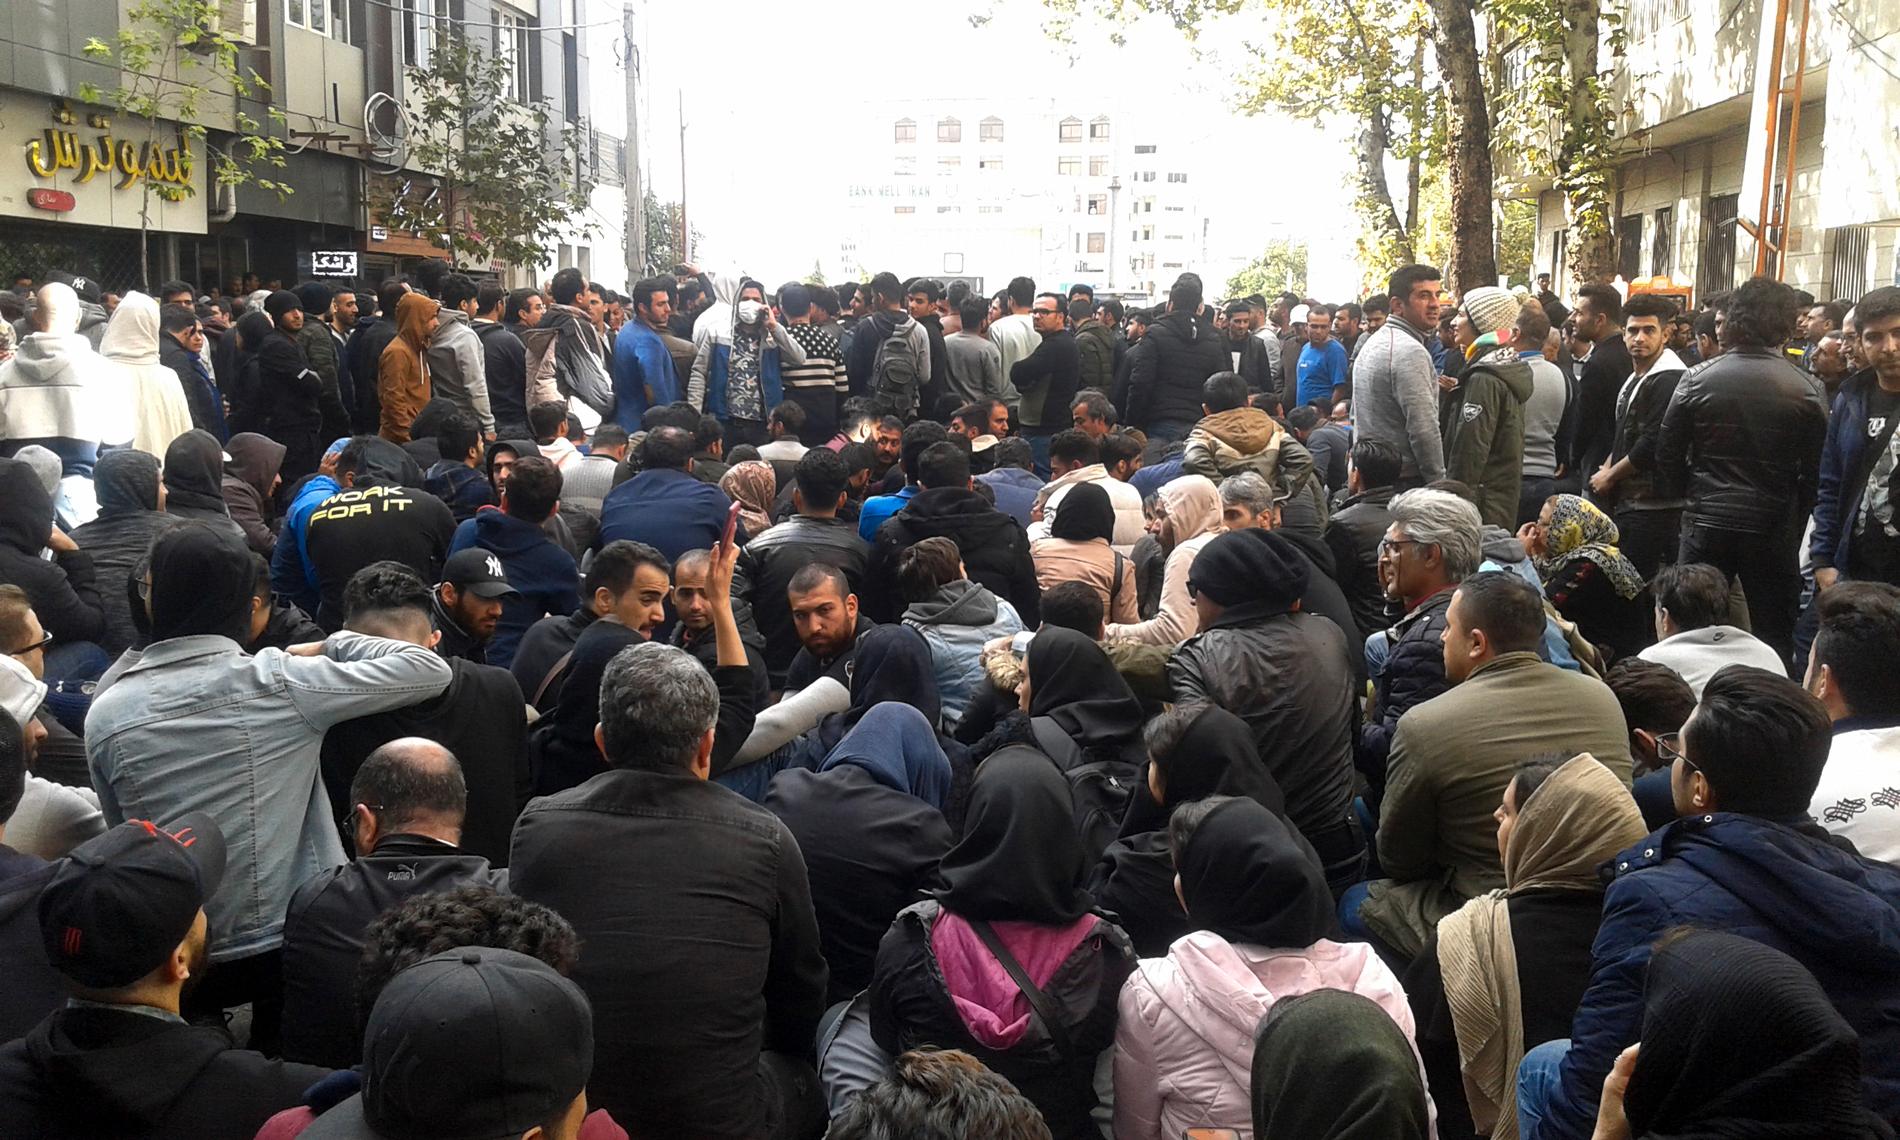 Kraftigt höjda bensinpriser fick iranier att demonstrera. I tre dagar demonstrerade de, innan myndigheterna slog till. Flera tusen är fängslade och över 300 dödades, uppger Amnesty International. Arkivbild.